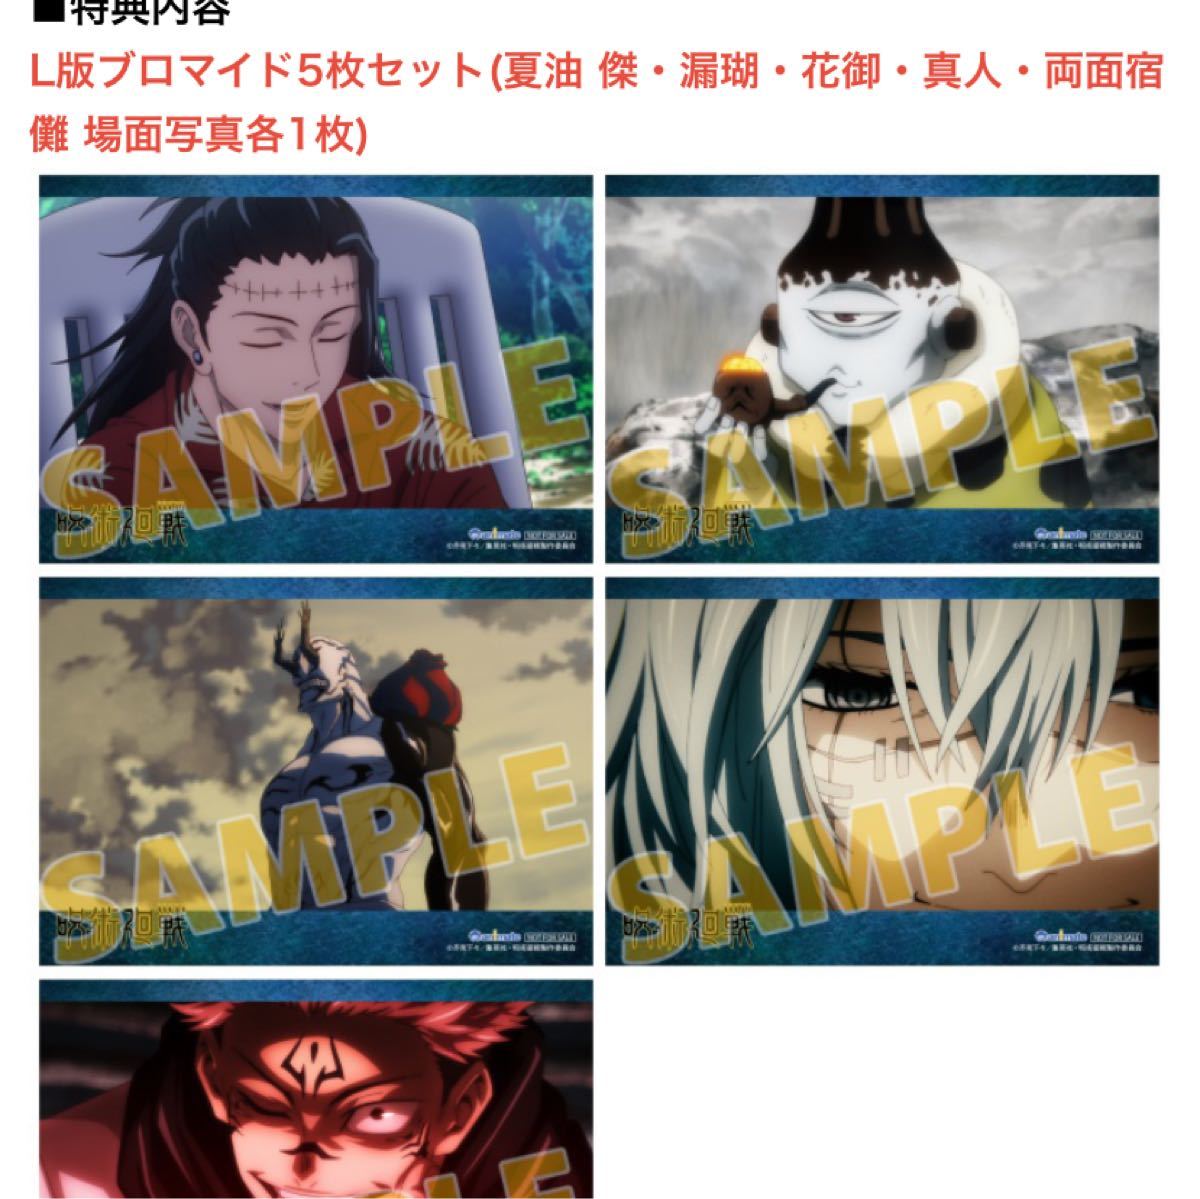 呪術廻戦 初回生産限定盤 Blu-ray 5〜8巻セット 全巻購入特典付